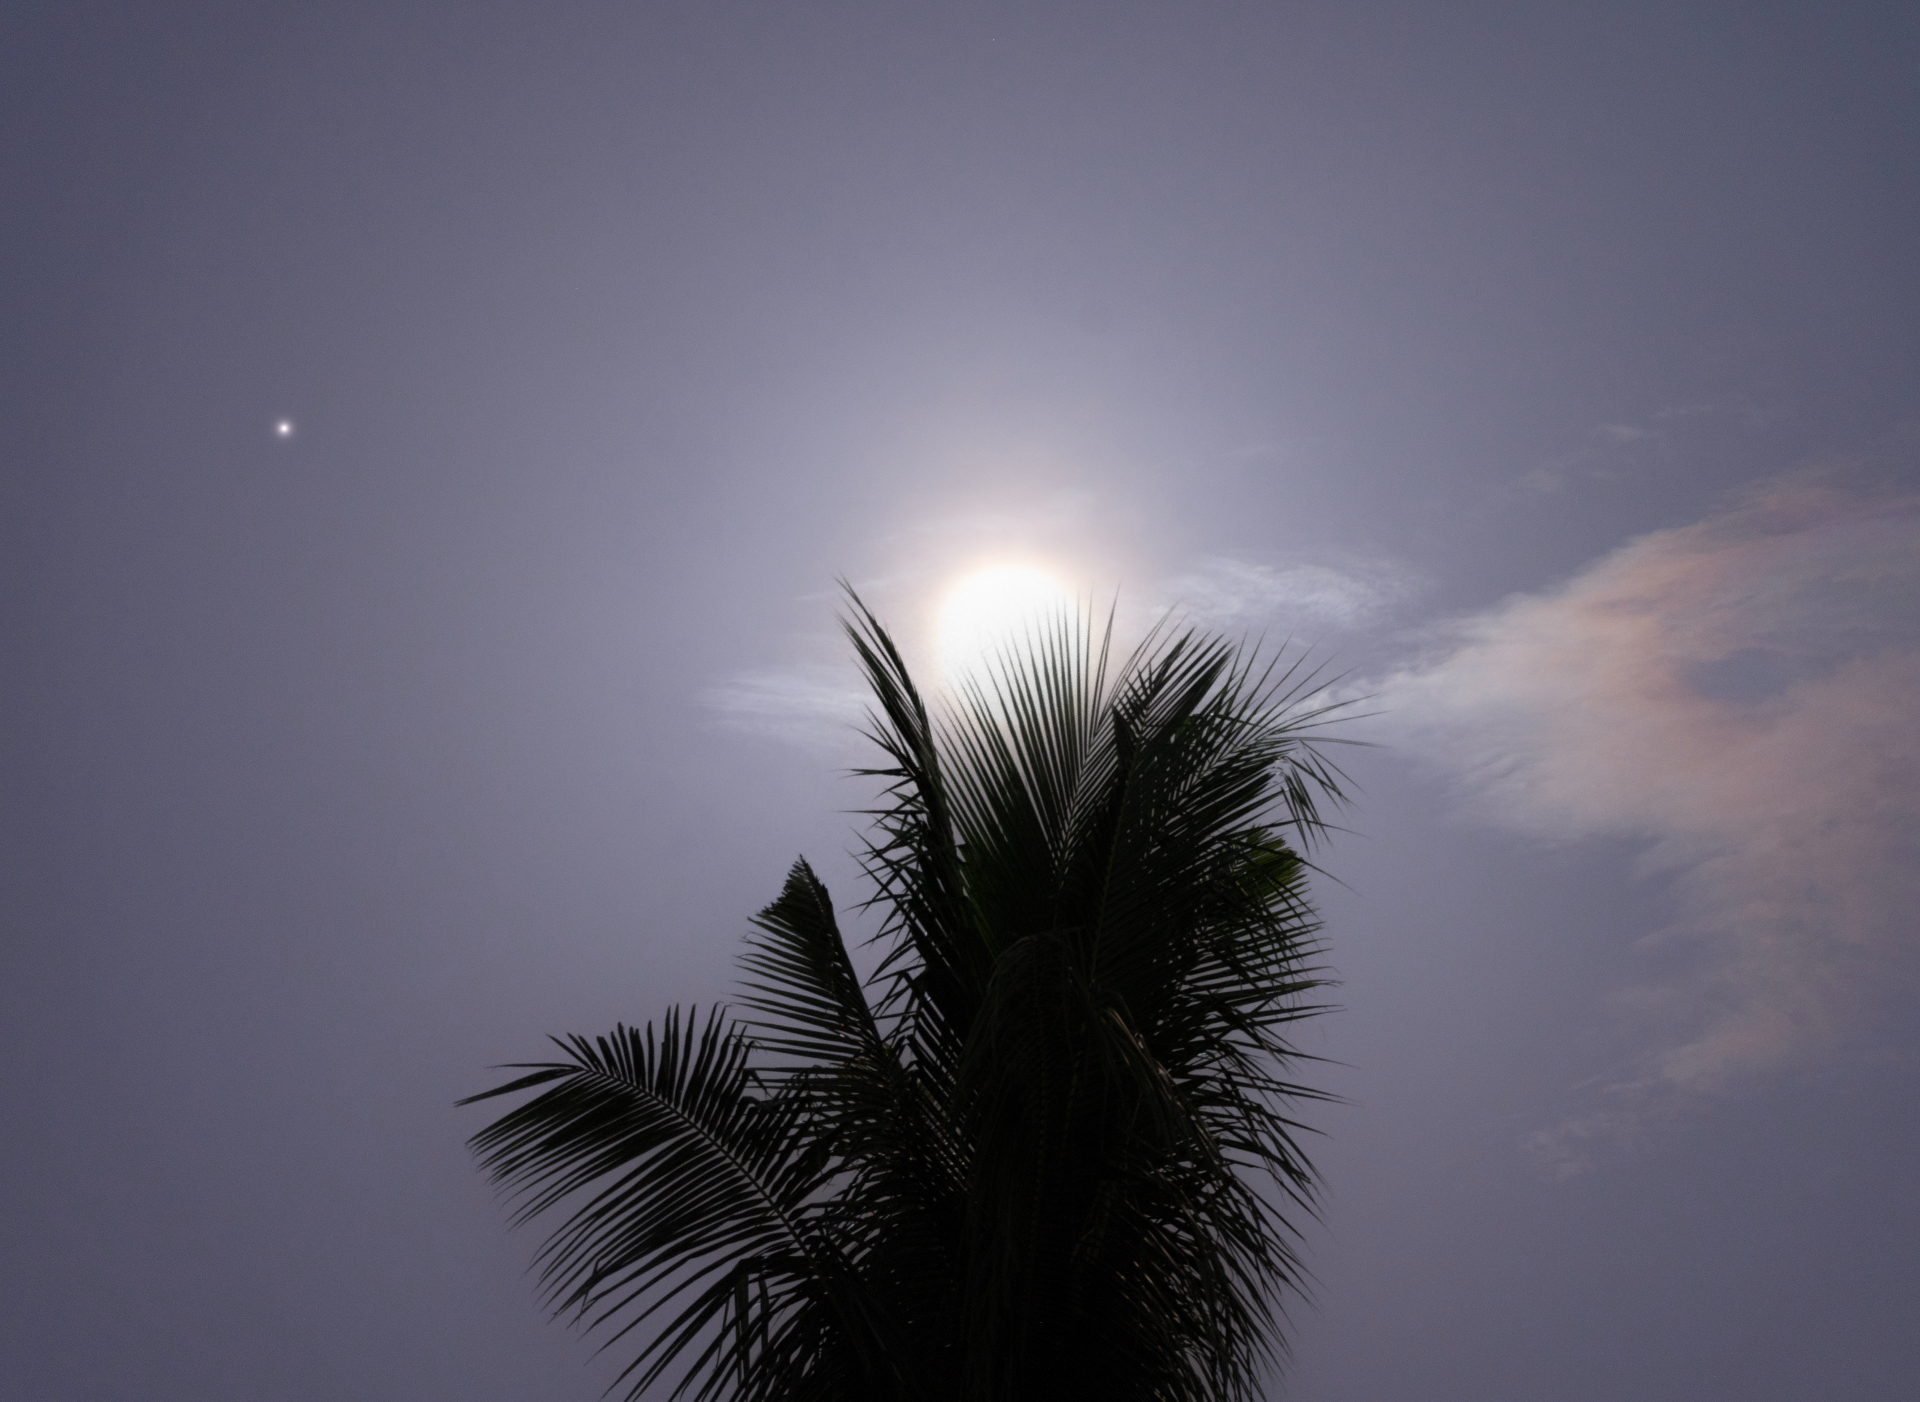 La lune bleue géante brille derrière un palmier, avec le petit point de Saturne visible à gauche de la lune.